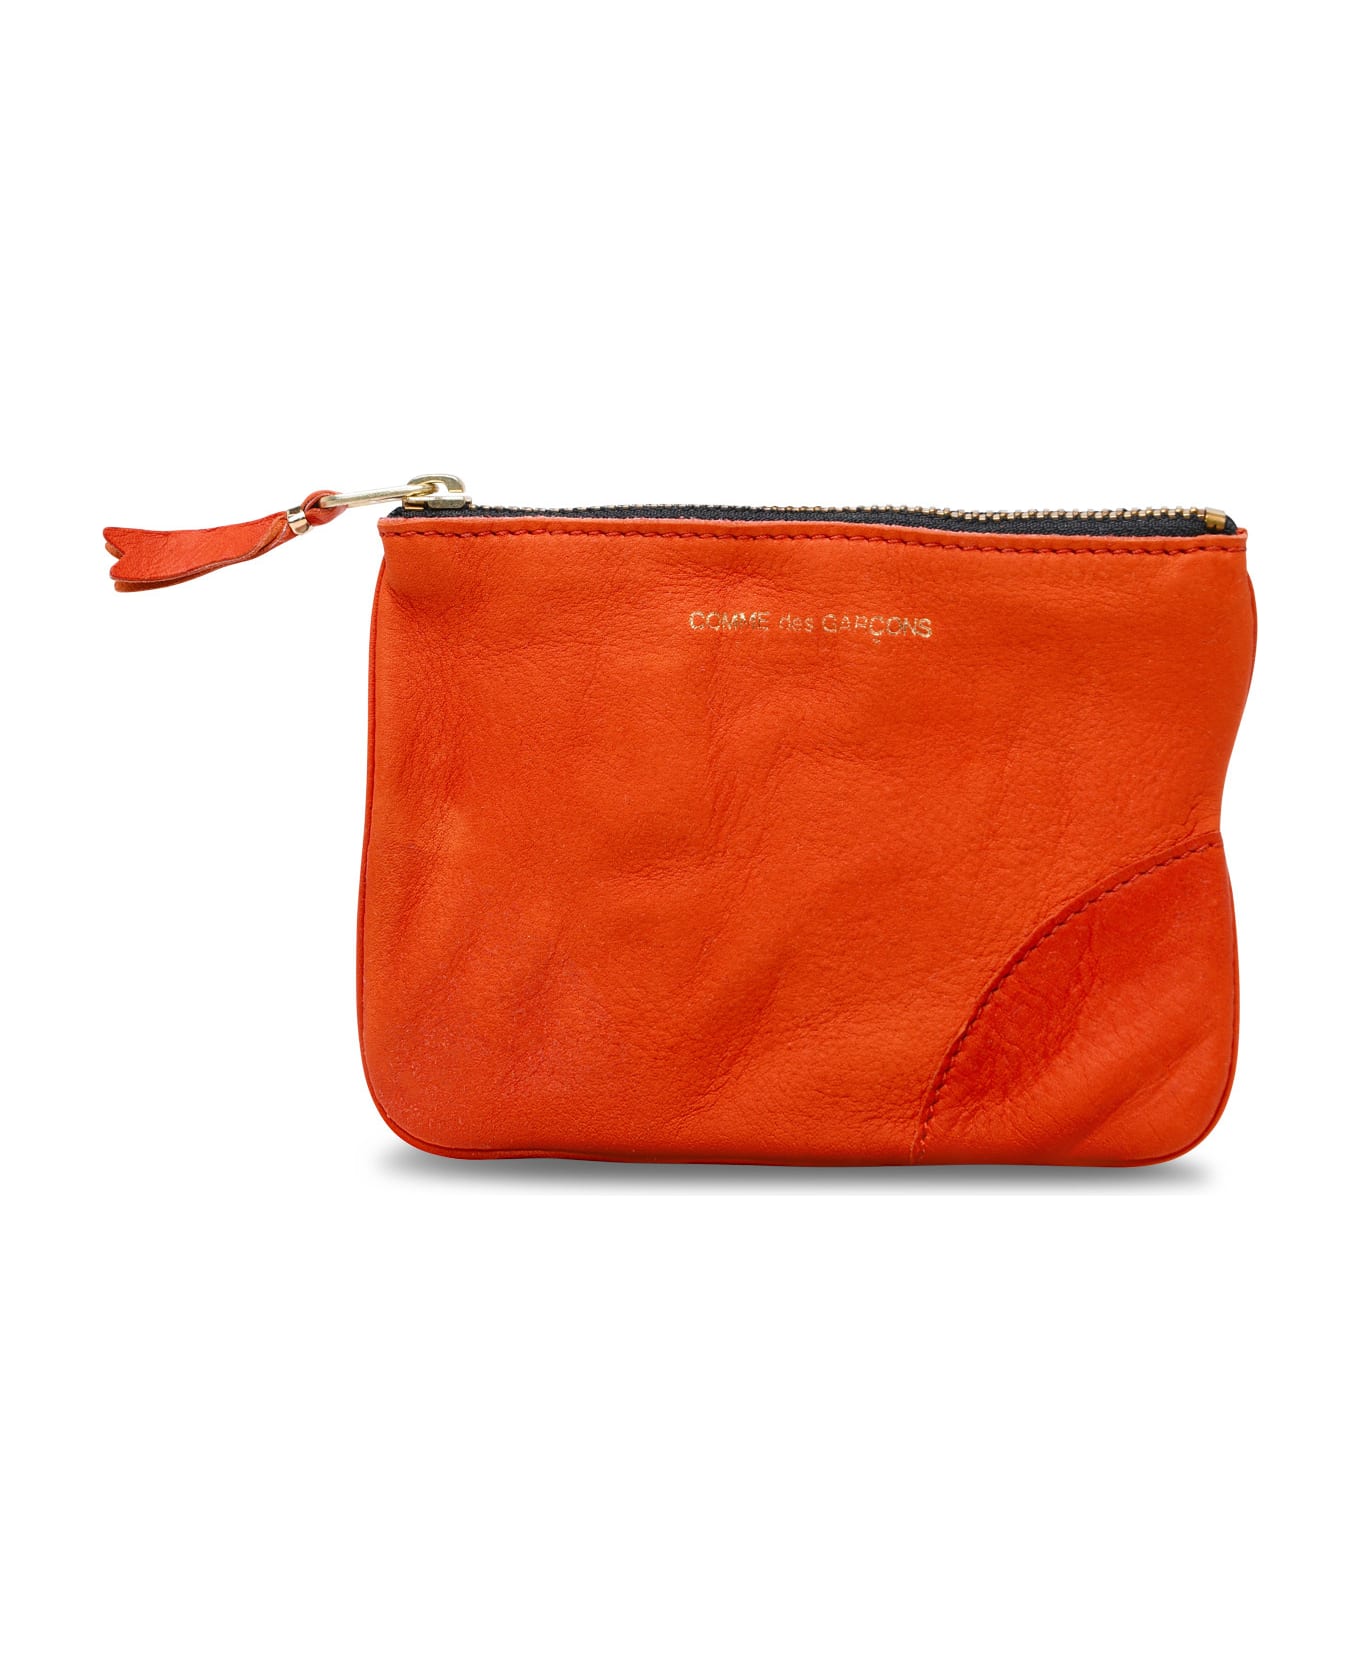 Comme des Garçons Wallet Orange Leather Card Holder - Orange